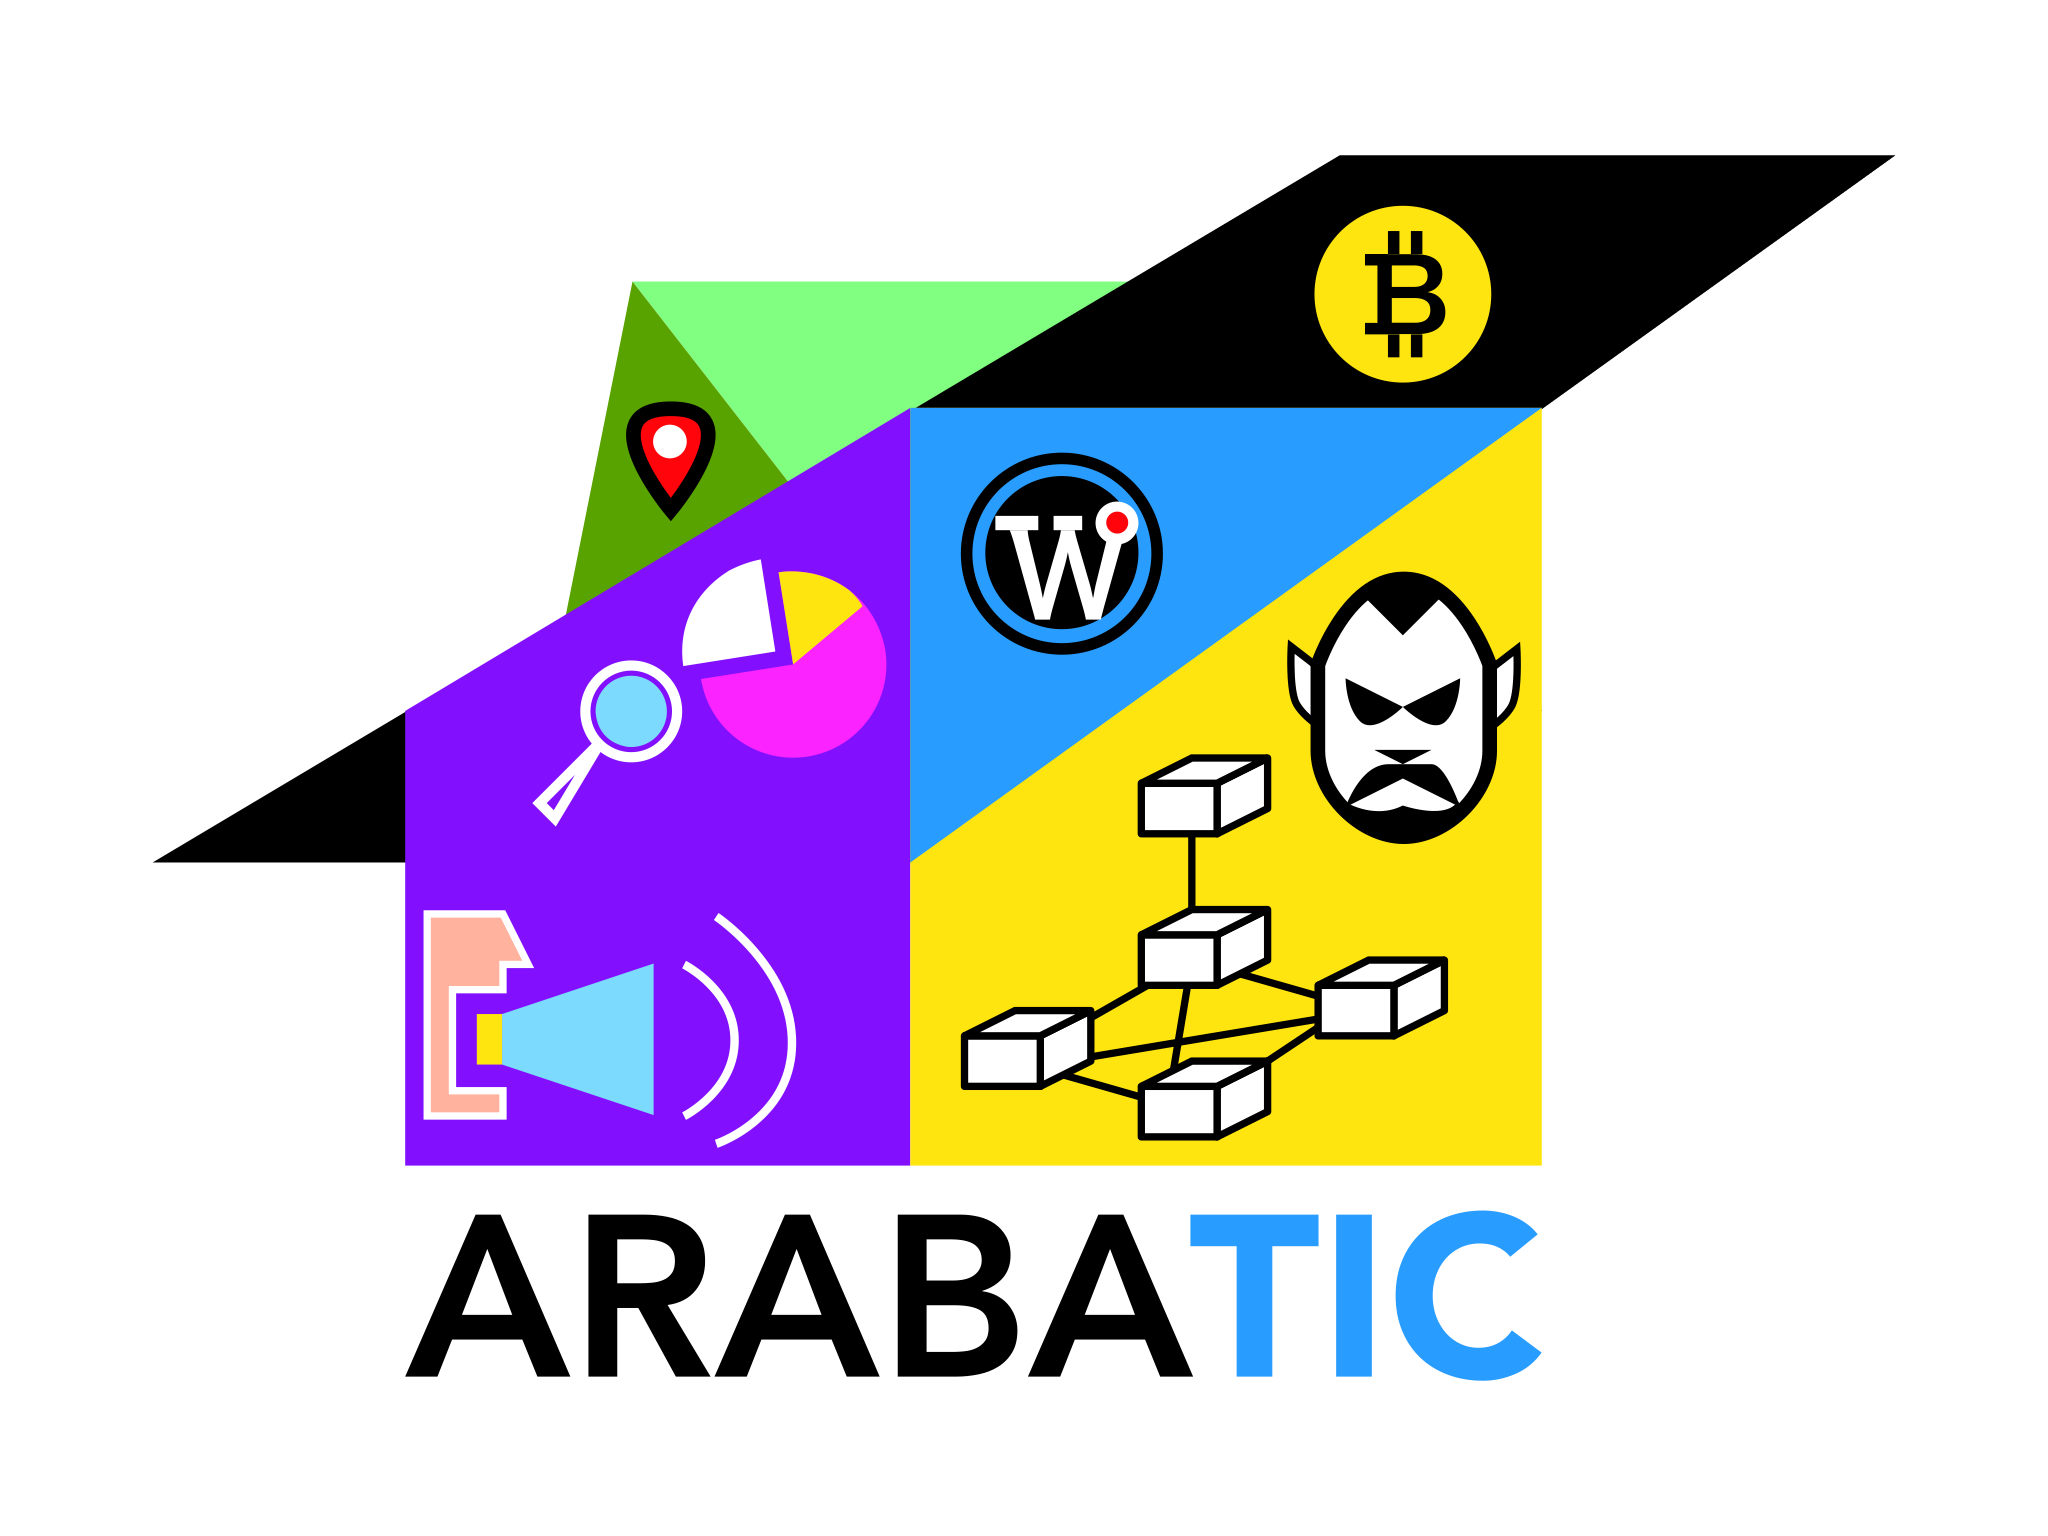 Arabatic 2019